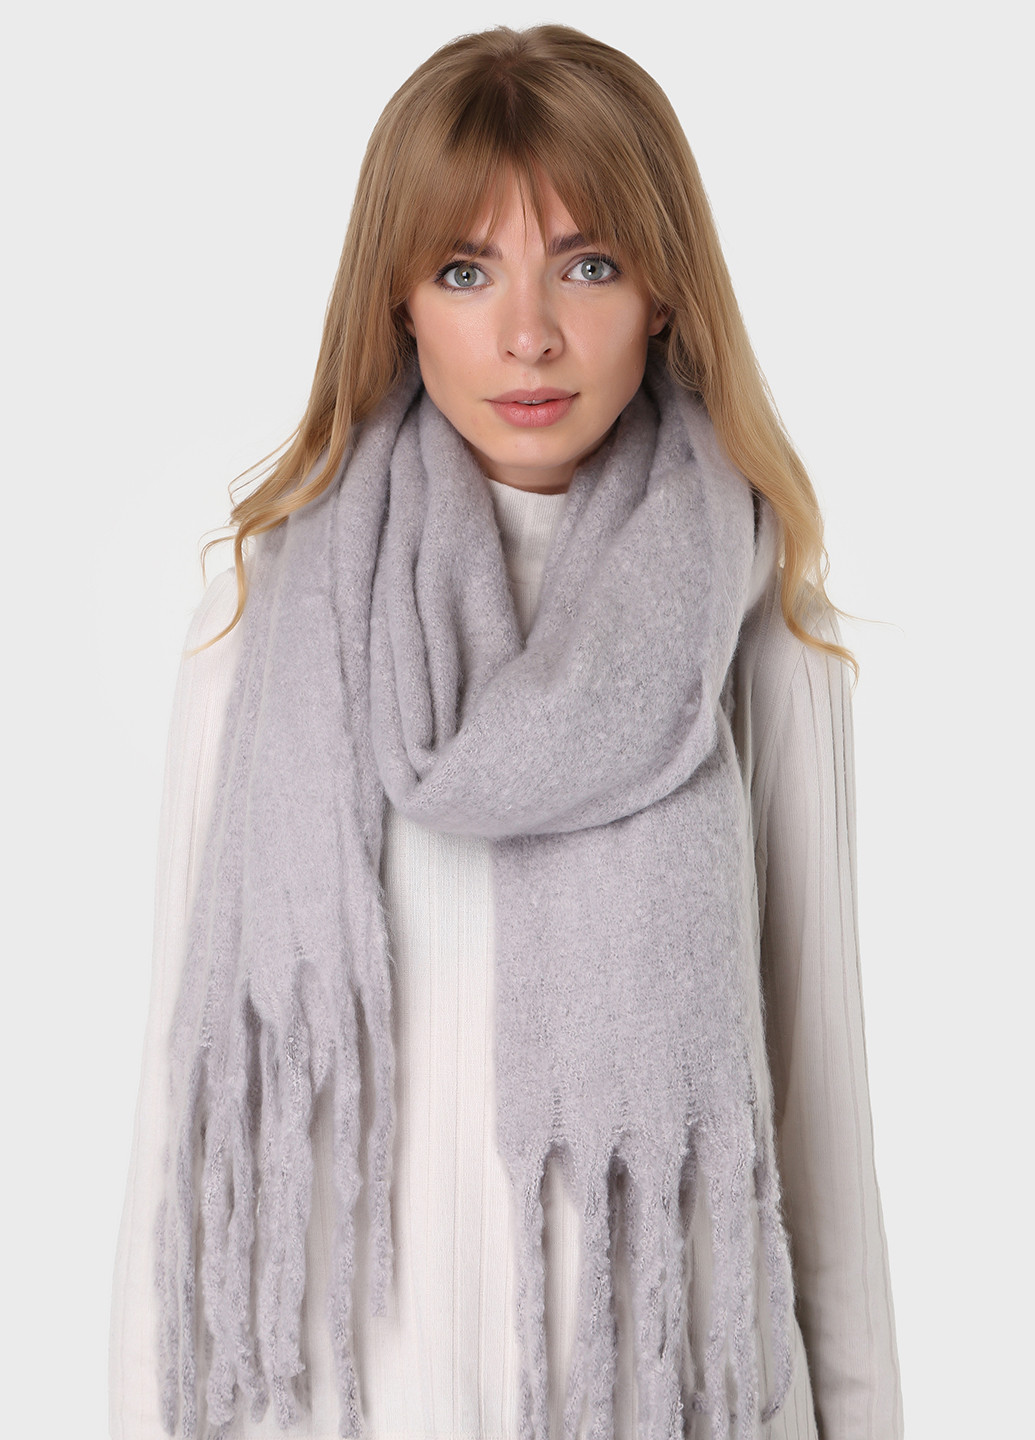 Теплый зимний шерстяной шарф с китицами (185*40см) 446010 Merlini однотонный серый кэжуал шерсть